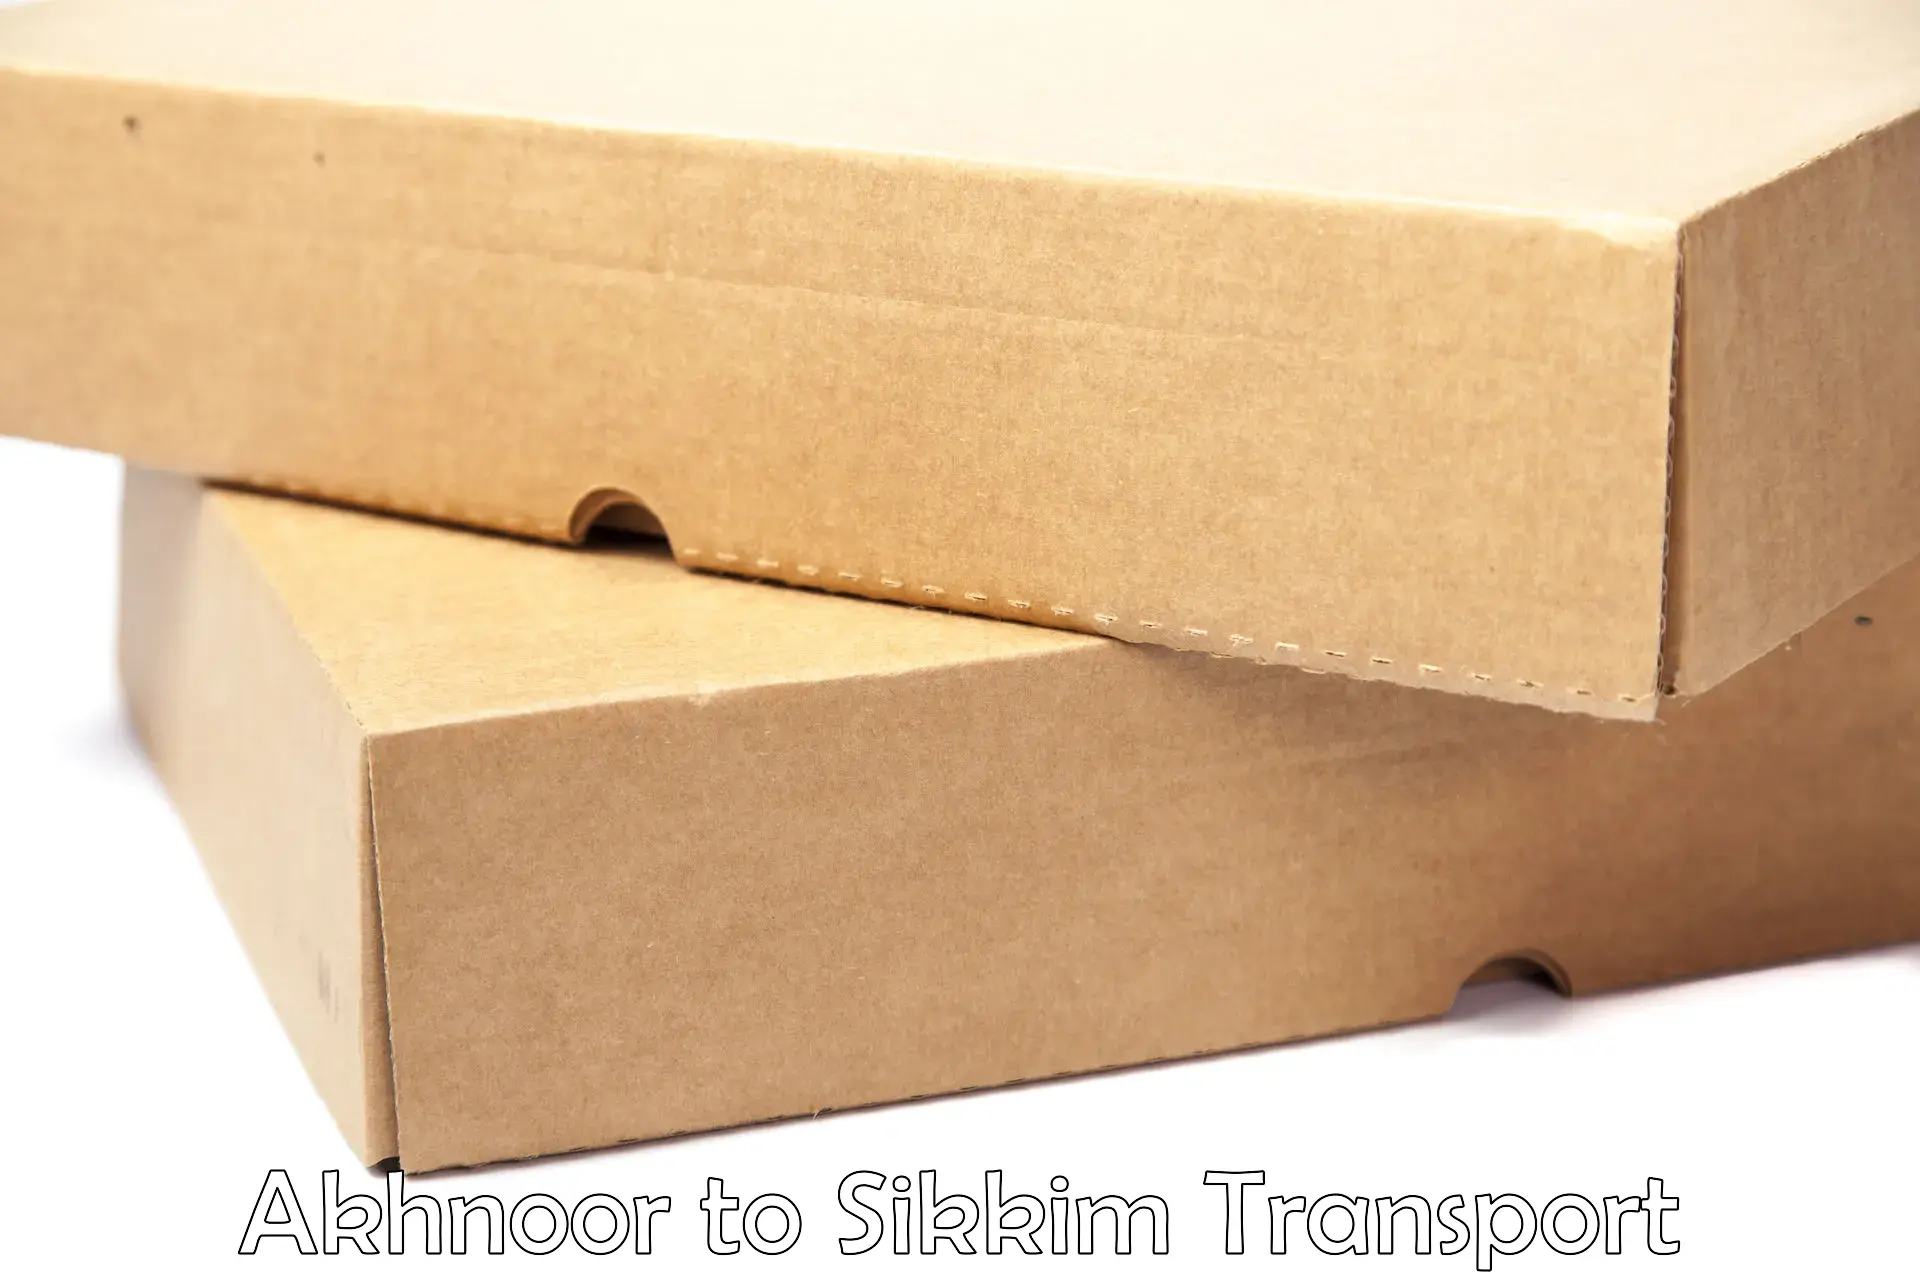 Cargo transport services in Akhnoor to Singtam